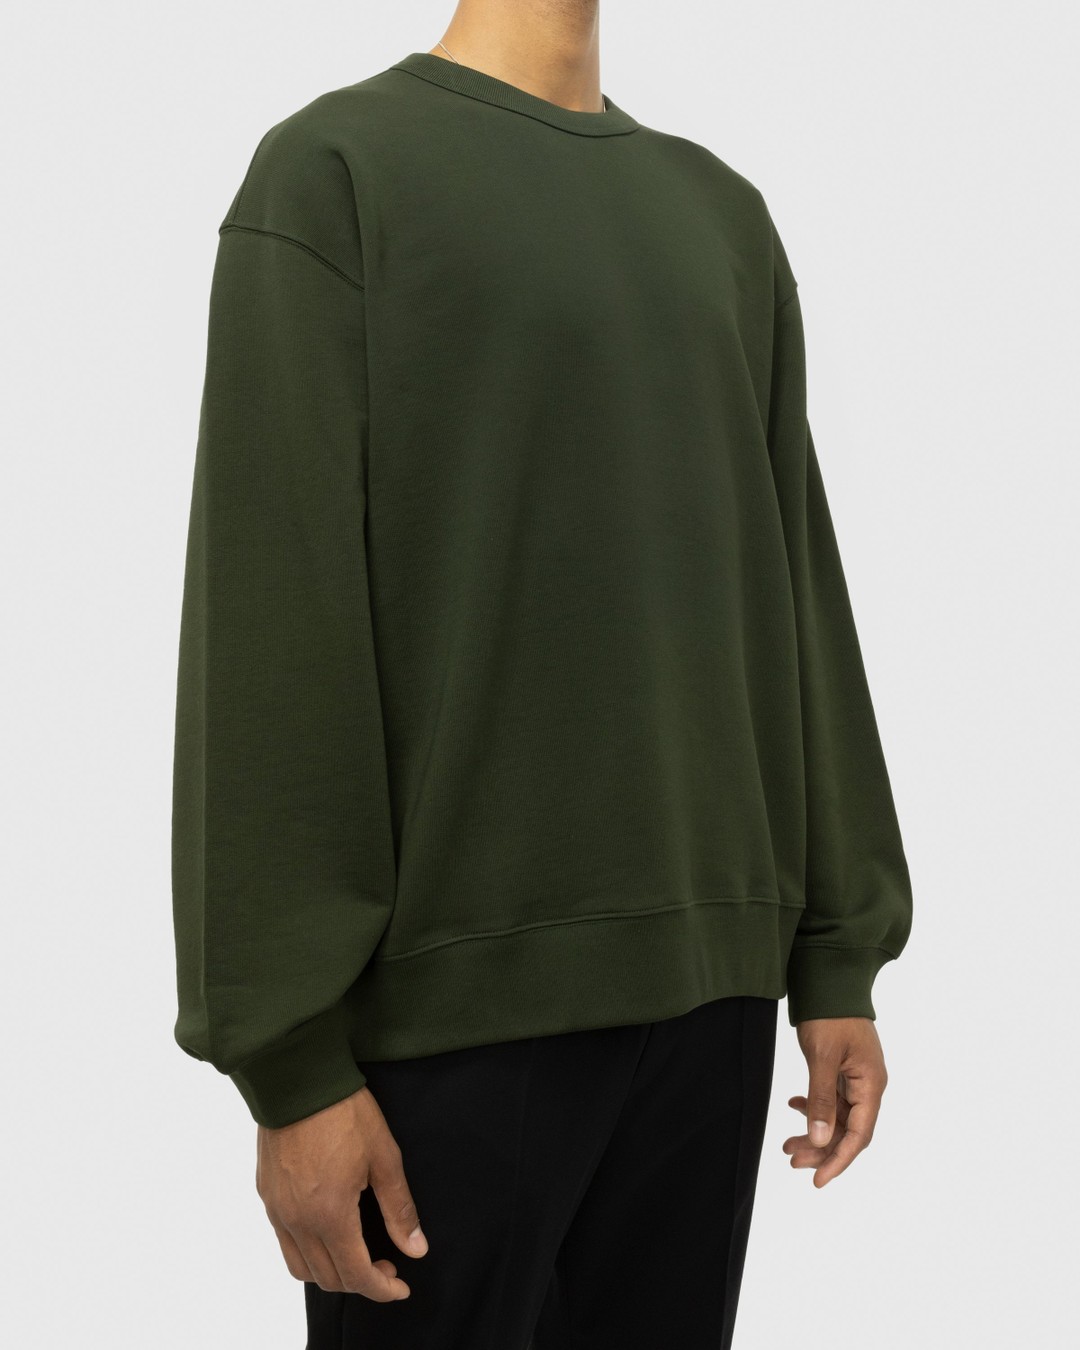 Dries van Noten – Hax Oversized Crewneck Green - Sweatshirts - Green - Image 2